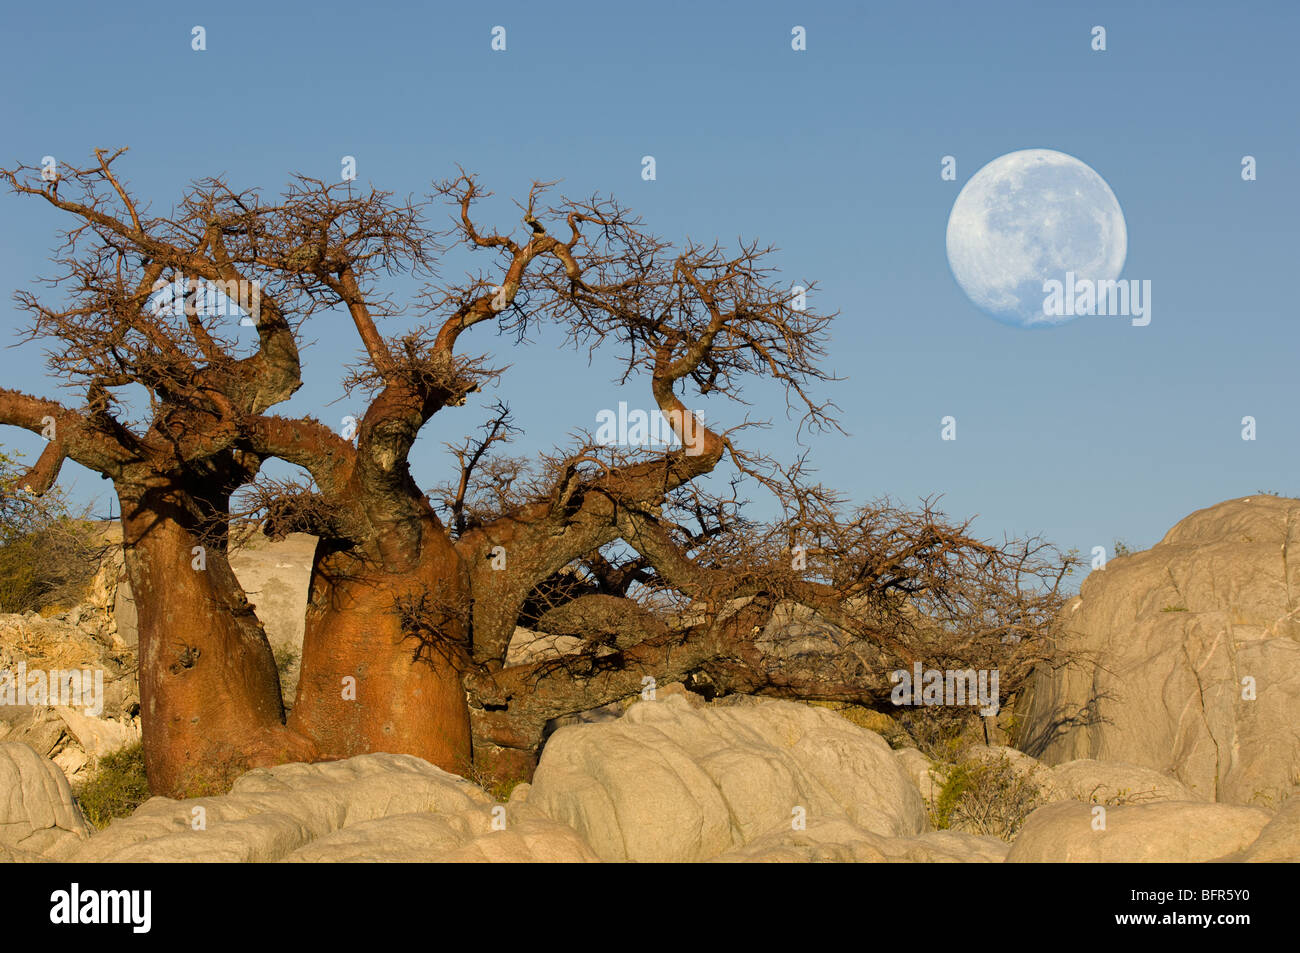 Alberi di baobab con luna piena a Kubu Island. Maggio 2006. Immagine composita manipolato digitalmente. Foto Stock